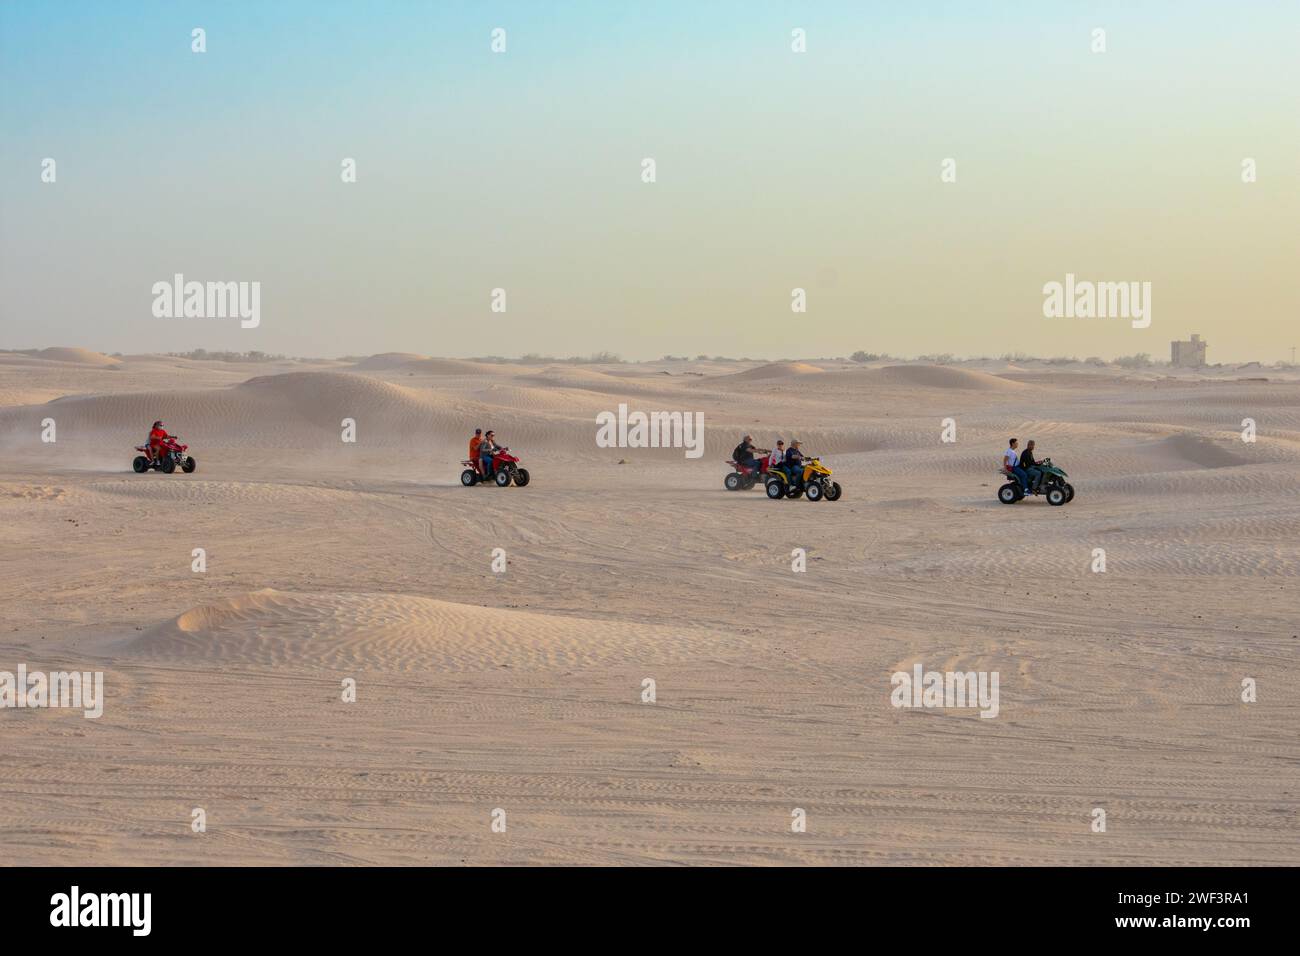 06.11.23 deserto del Sahara, Tunisia: Safari in quad nel deserto del Sahara, Tunisia. Persone che guidano quad sulle dune di sabbia Foto Stock